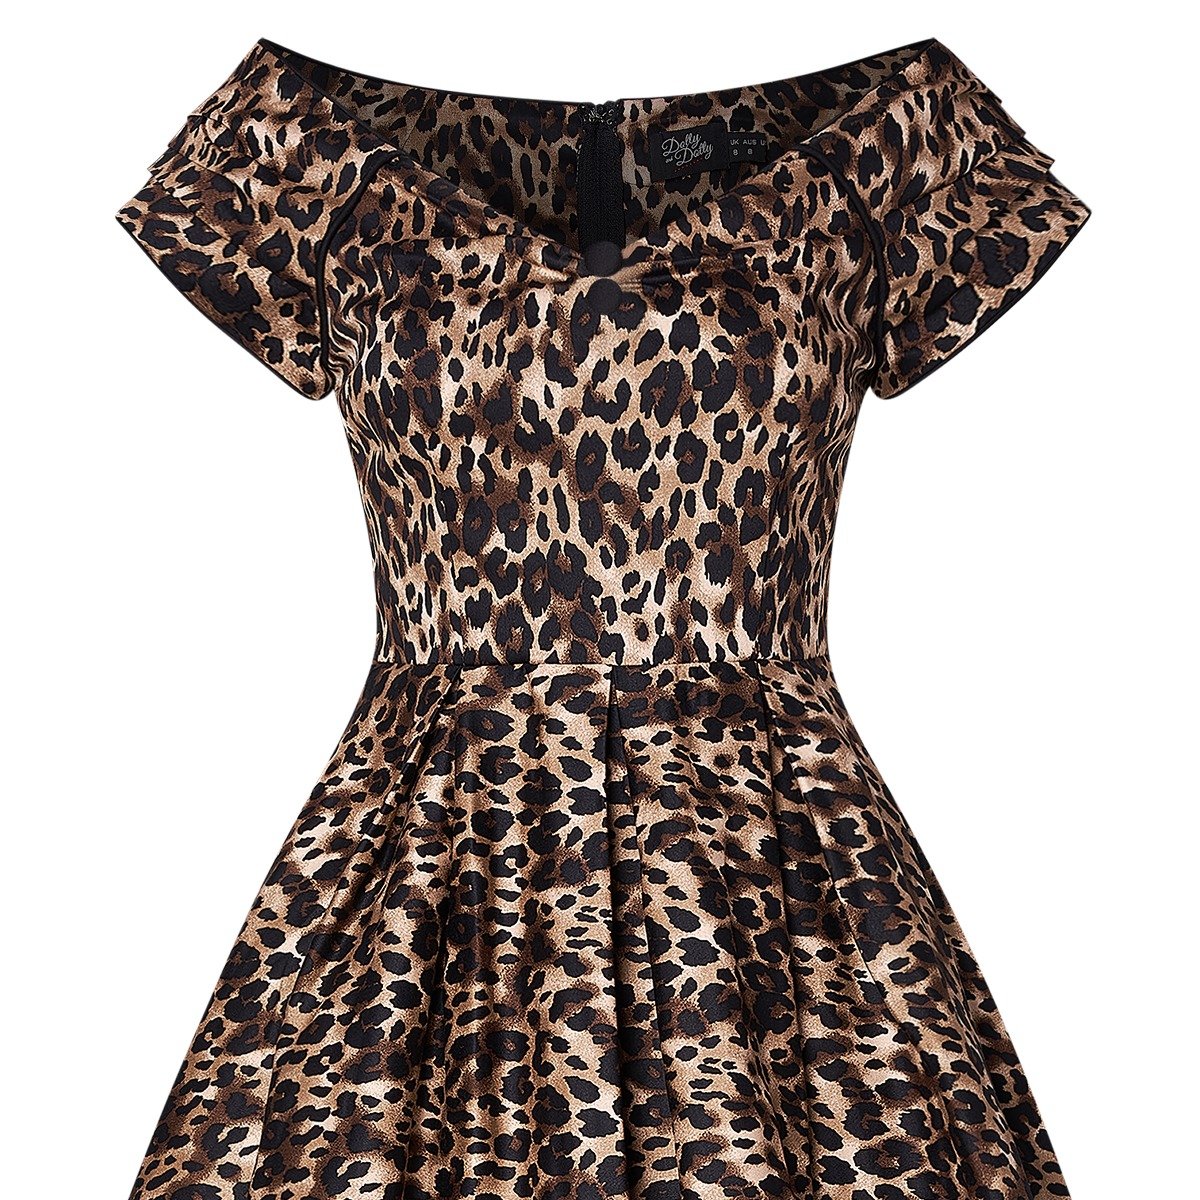 Vintage Mode 50er Jahre Stil Lily Swing Dress in Leopard Print